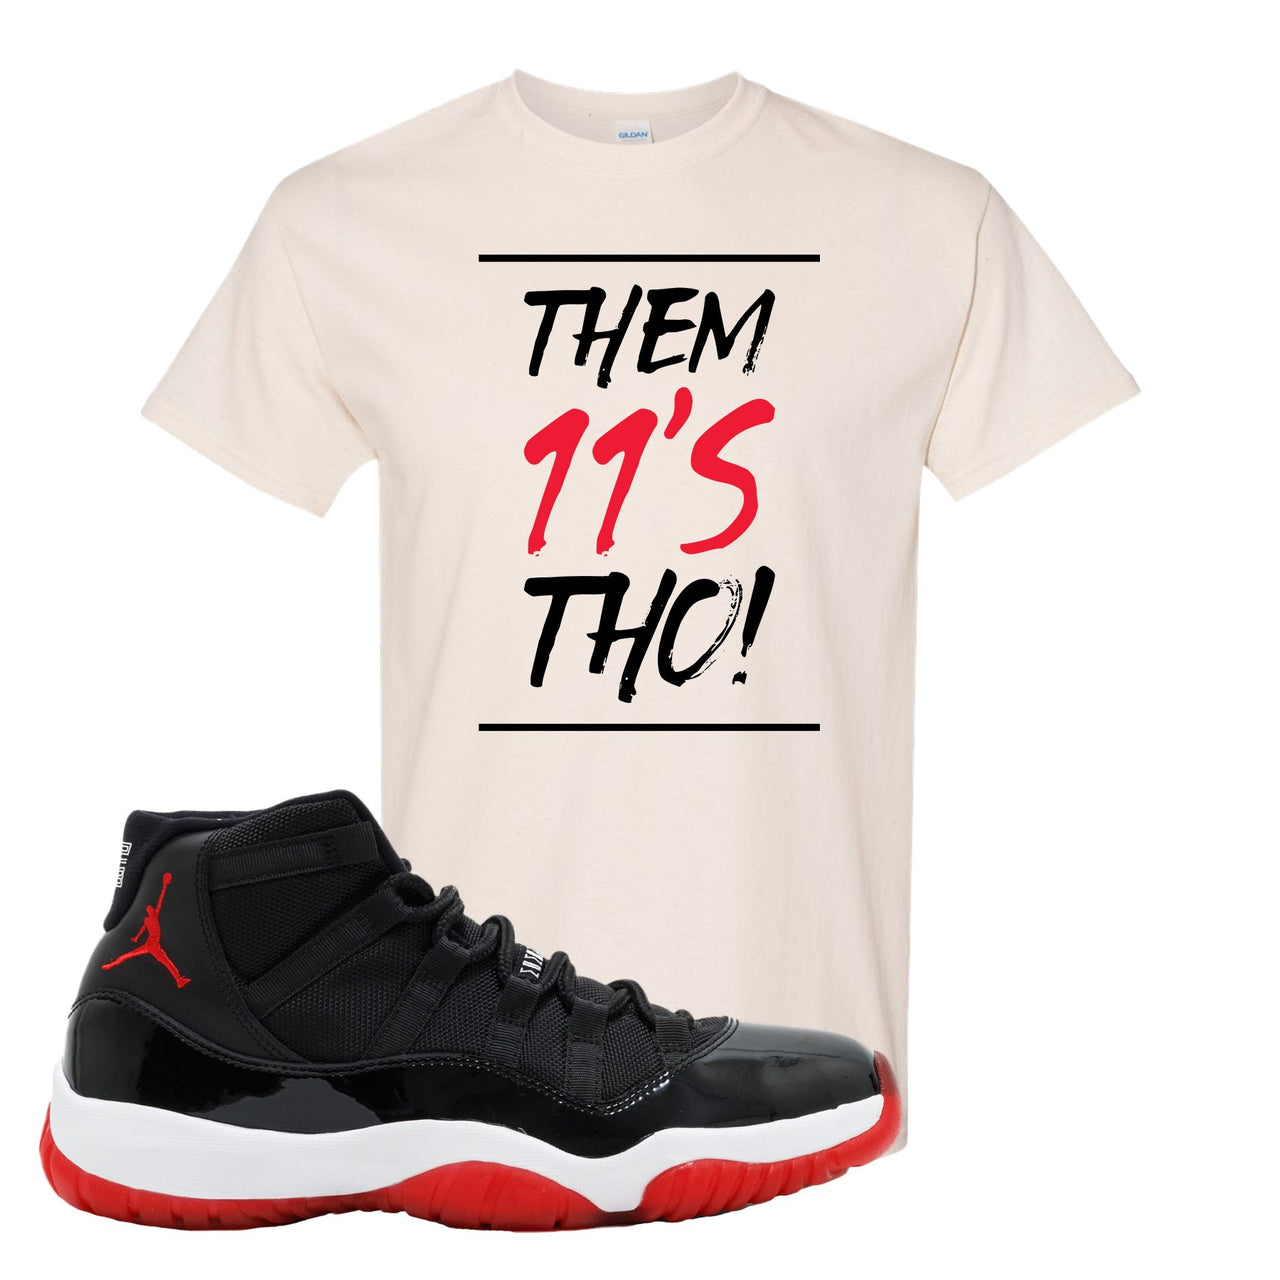 Jordan 11 Bred Them 11s Tho! White Sneaker Hook Up T-Shirt